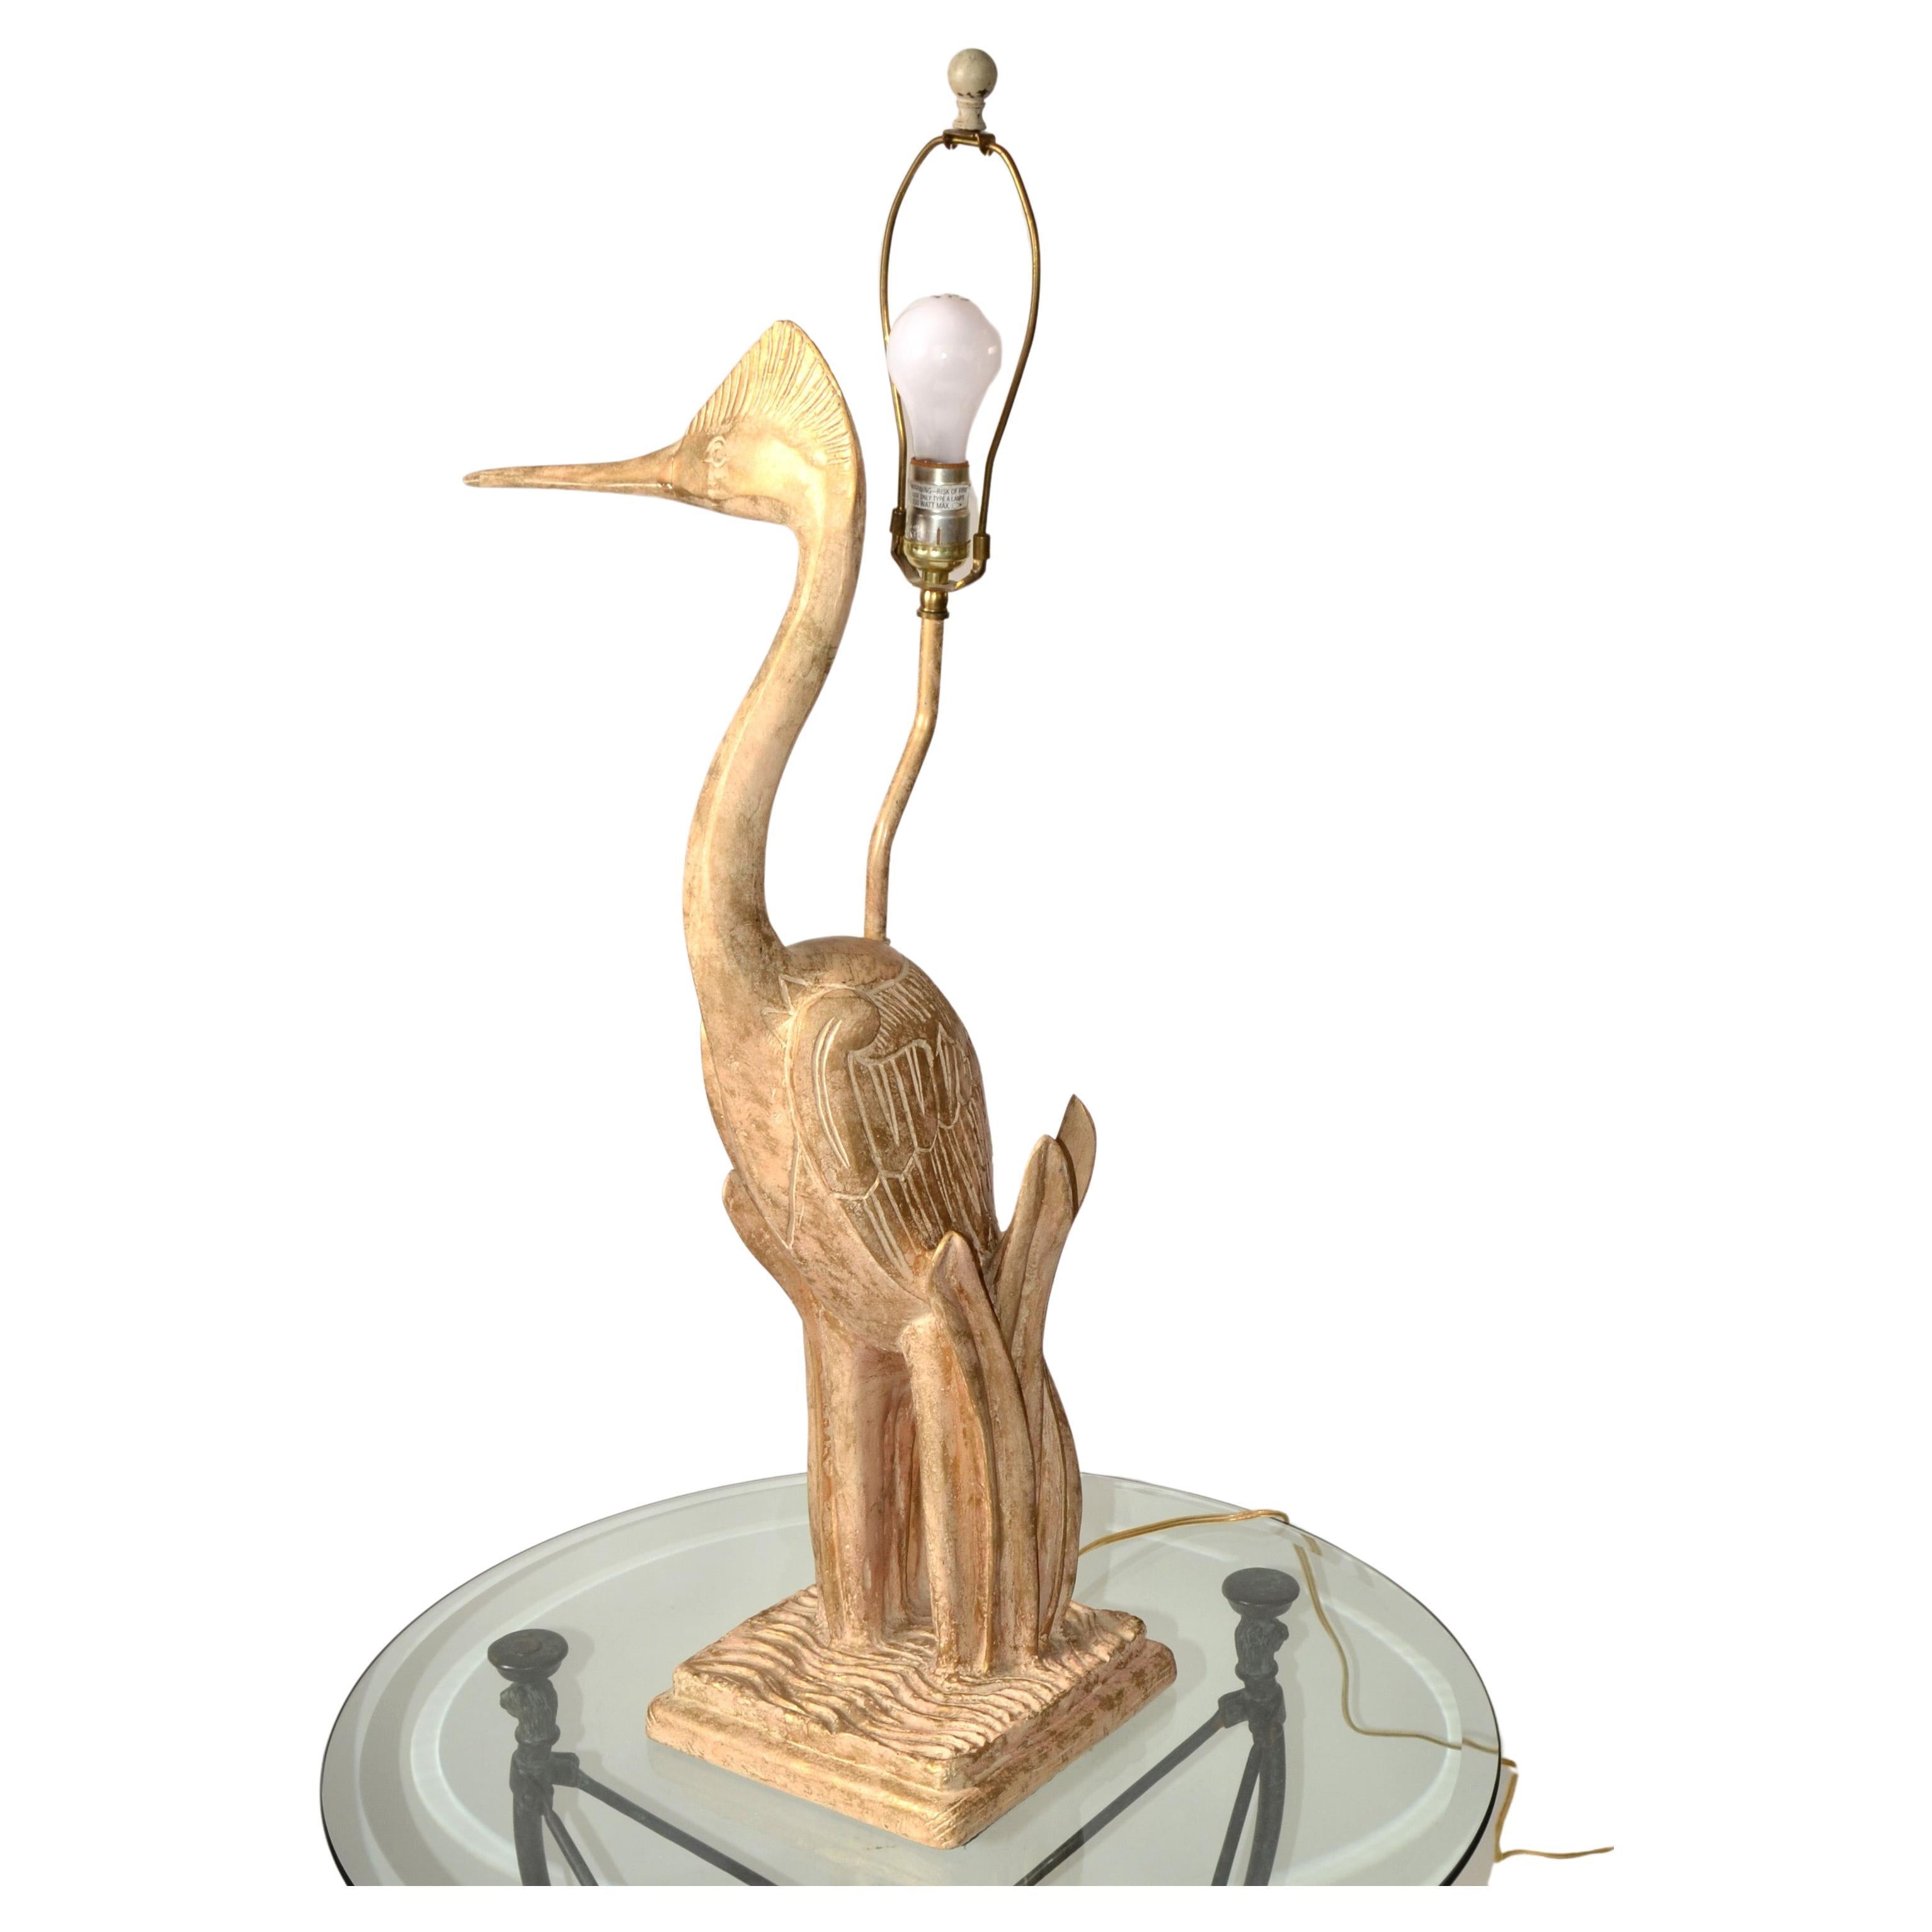 Eine einteilige handgeschnitzte Zedernholz Reiher Vogel Tierskulptur Tischlampe, 37 Zoll hoch mit Harfe und Messing Finial.
Die Handwerkskunst ist sehr detailliert, und der Reiher ist aus einem einzigen Holzblock geschnitzt. 
US-Verkabelung und für